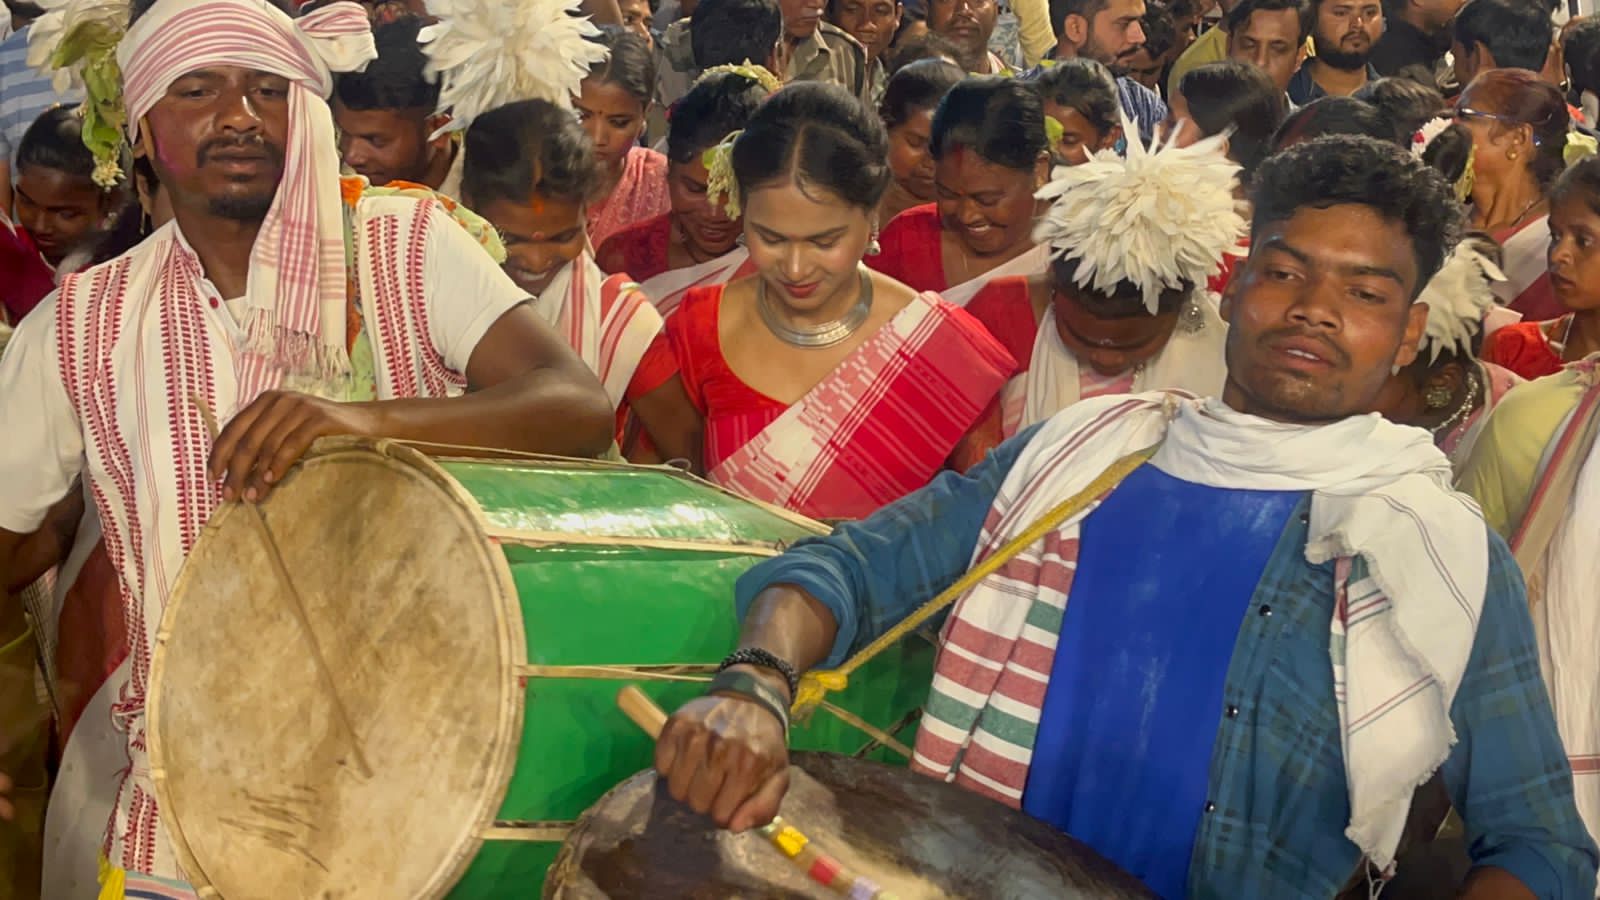 रांची में प्रकृति पर्व सरहुल की रही धूम, नागपुरी धुनों पर जमकर थिरके लोग Nature festival Sarhul celebrated in Ranchi, people danced to Nagpuri tunes 